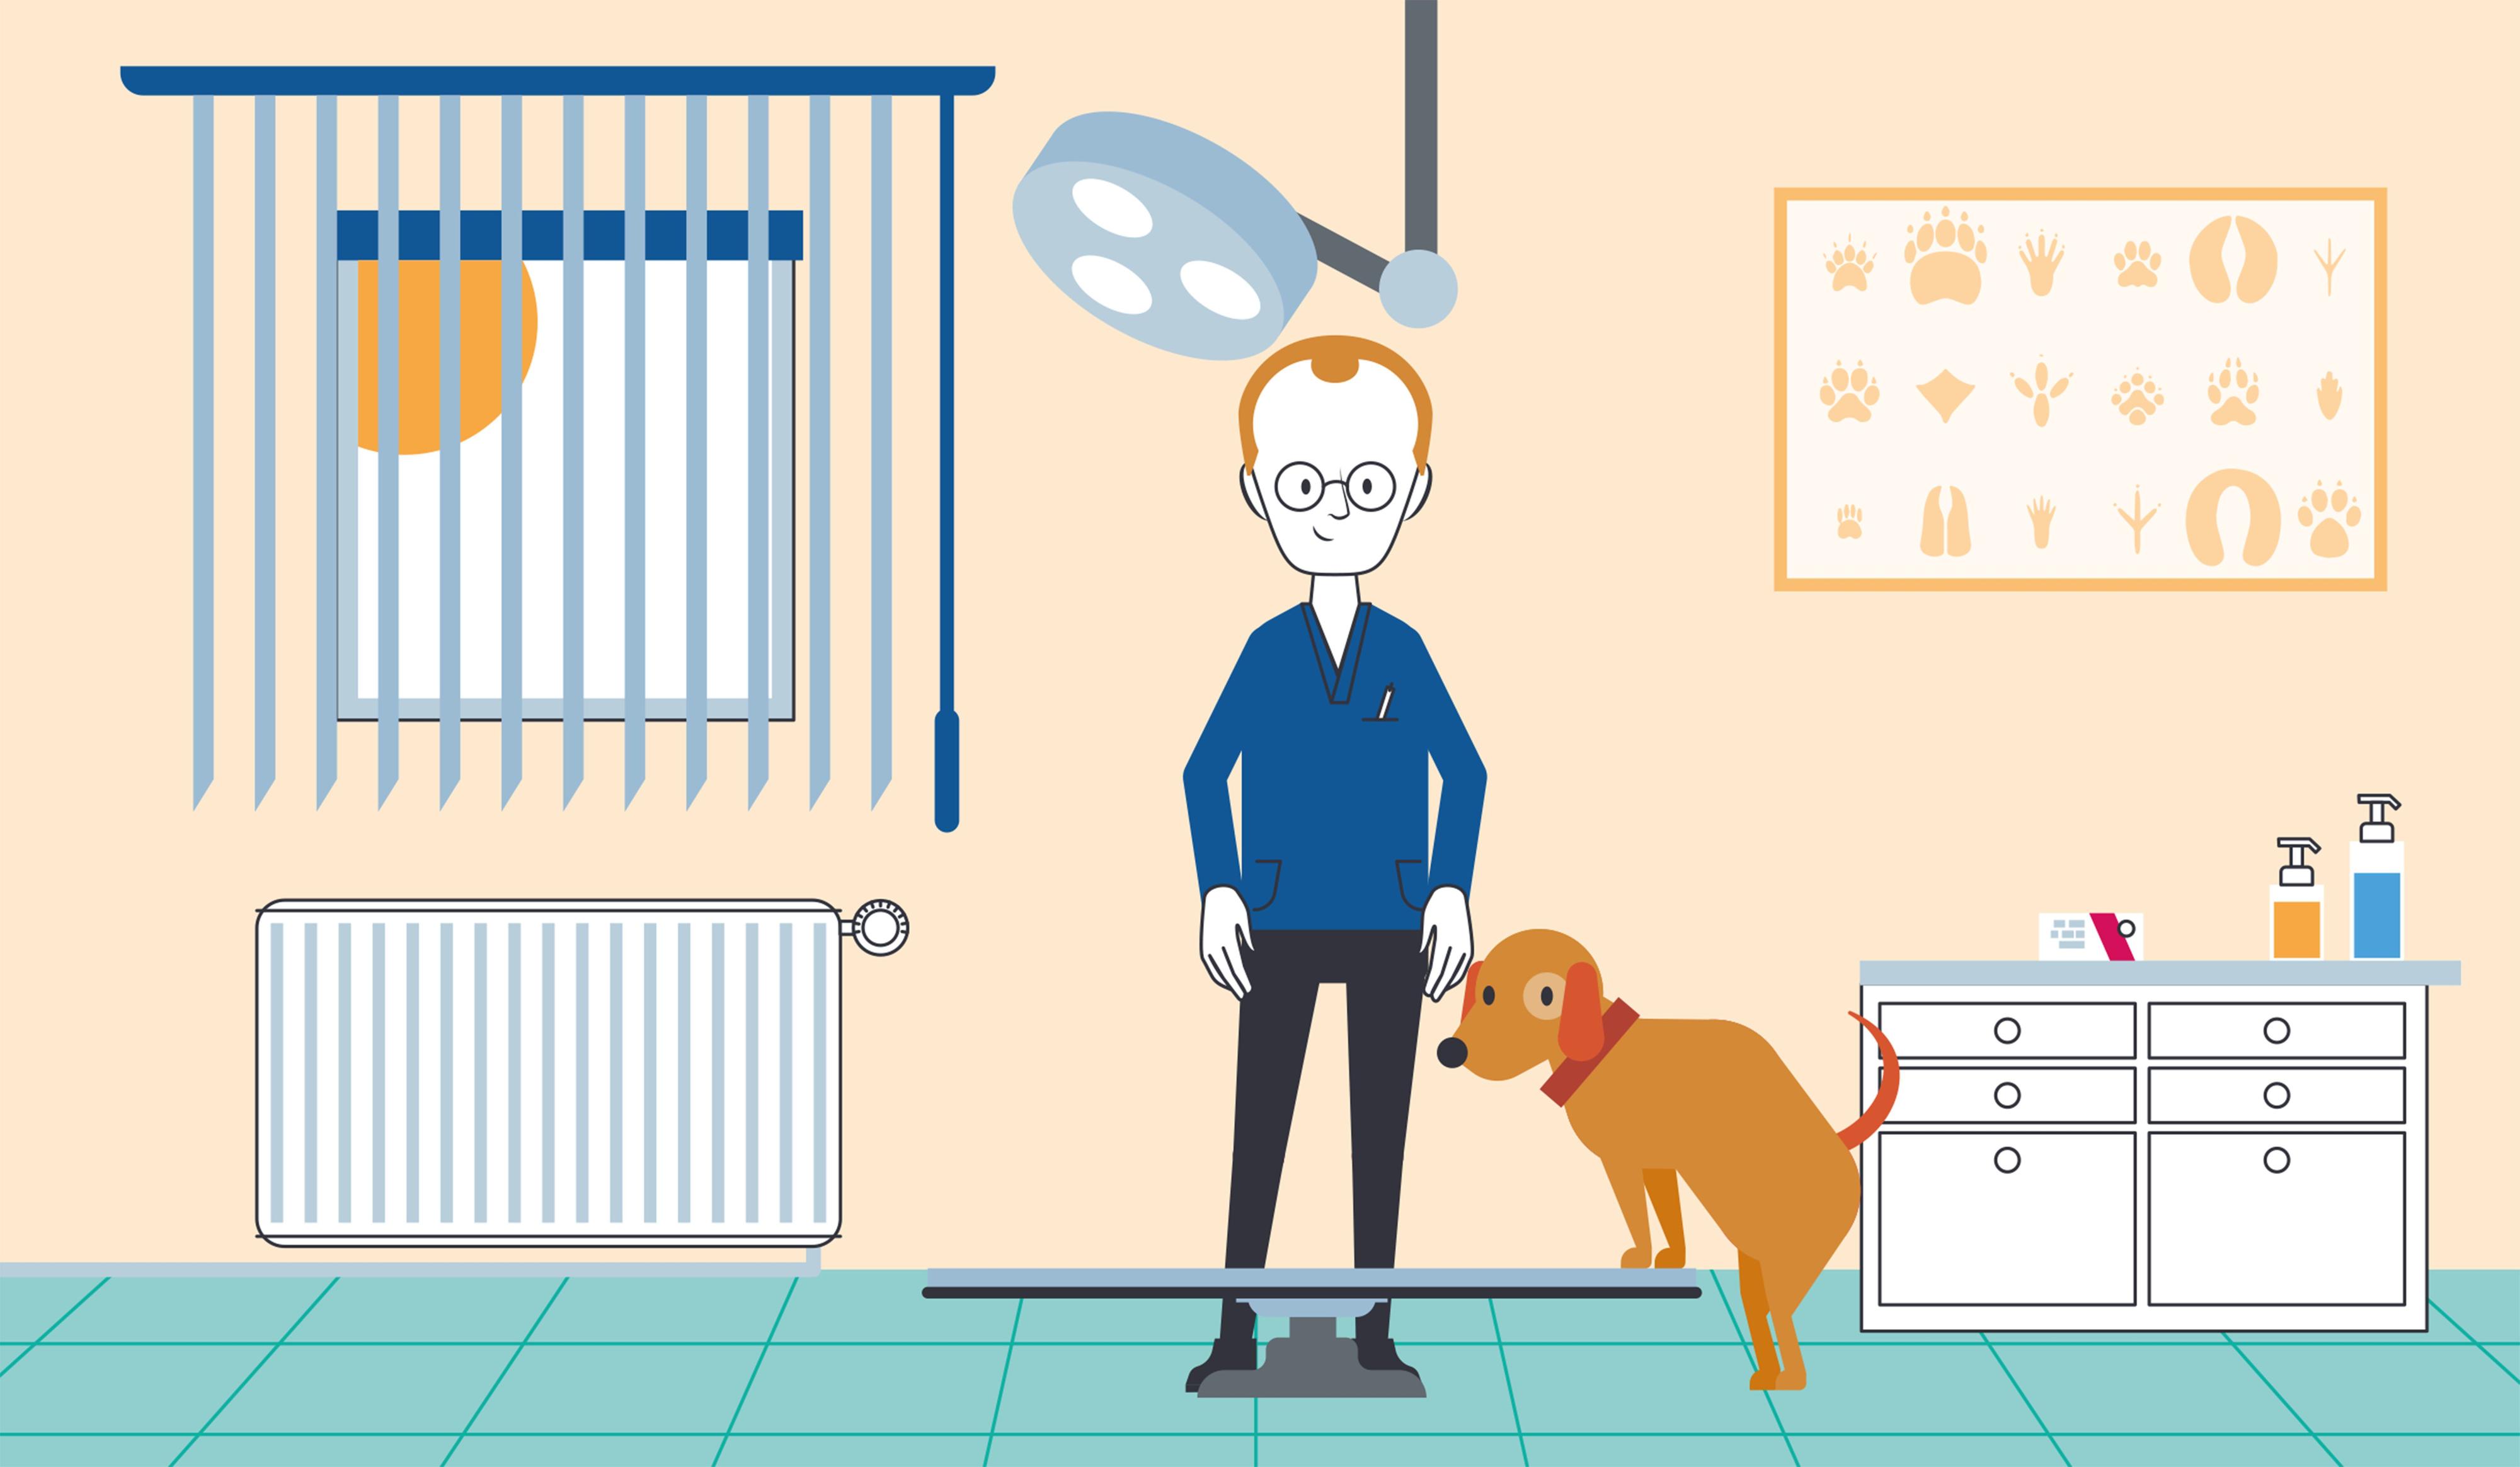 Illustration: Blick in eine Tierarztpraxis - Tierarzt und Hund im Behandlungszimmer, der Hund steht mit den Vorderpfoten auf einem höhenverstellbaren Behandlungstisch.